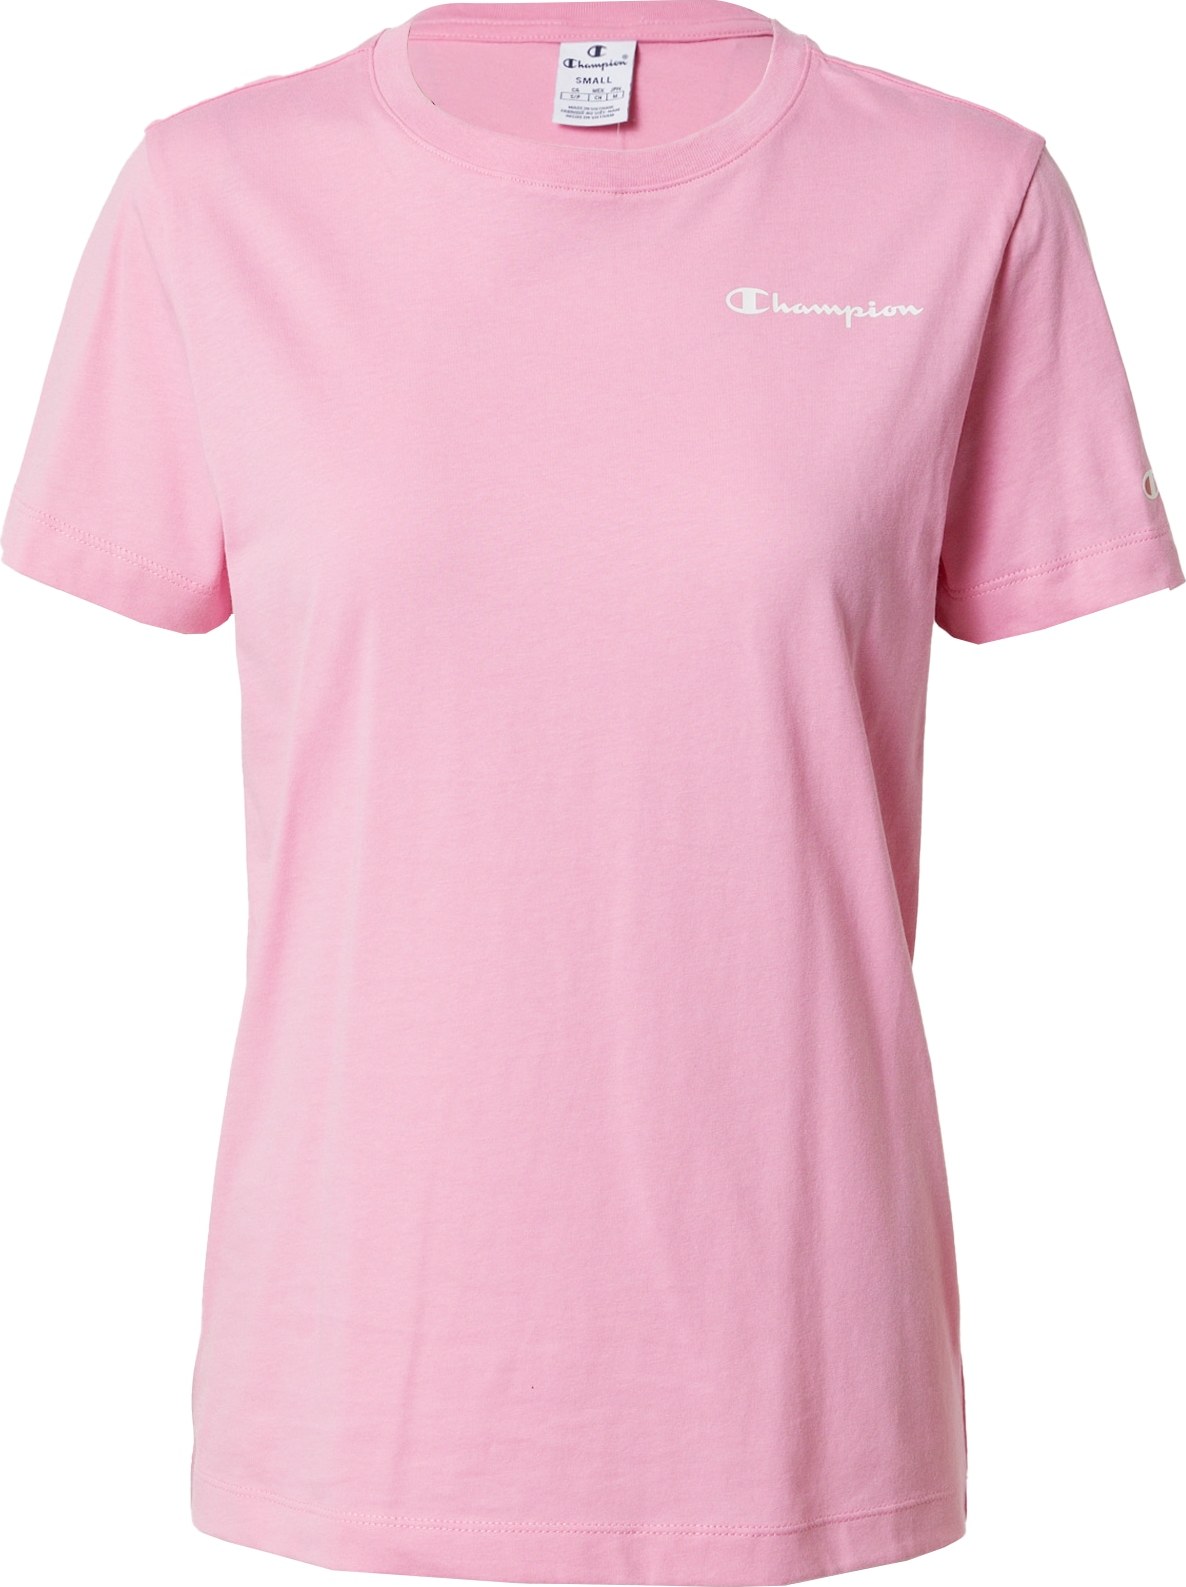 Tričko Champion Authentic Athletic Apparel světle růžová / bílá